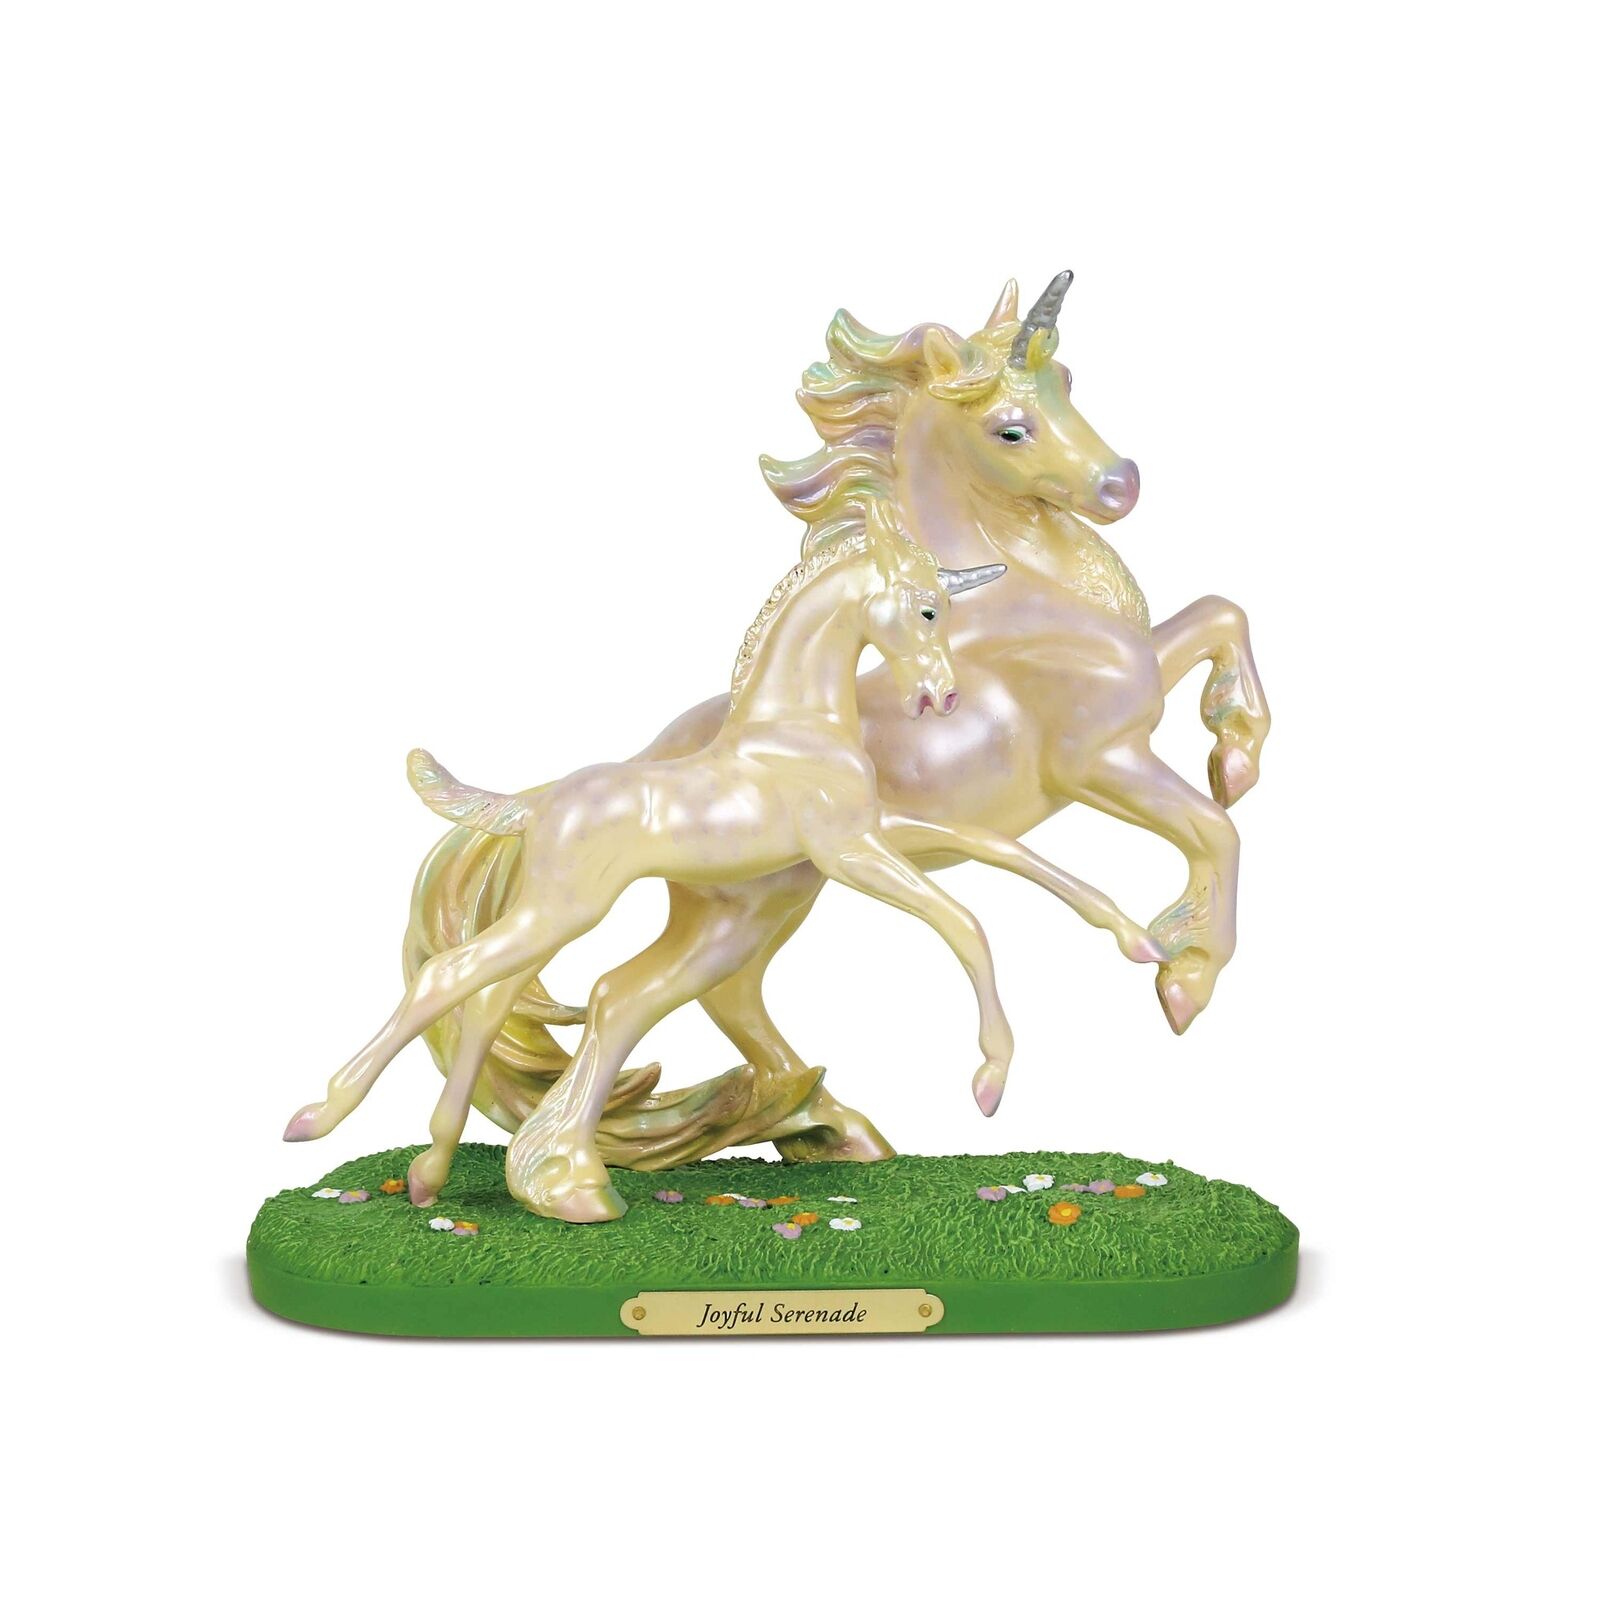 Enesco Trail of Painted Ponies Joyful Serenade, 8.5 Inch Stone Resin Figurine